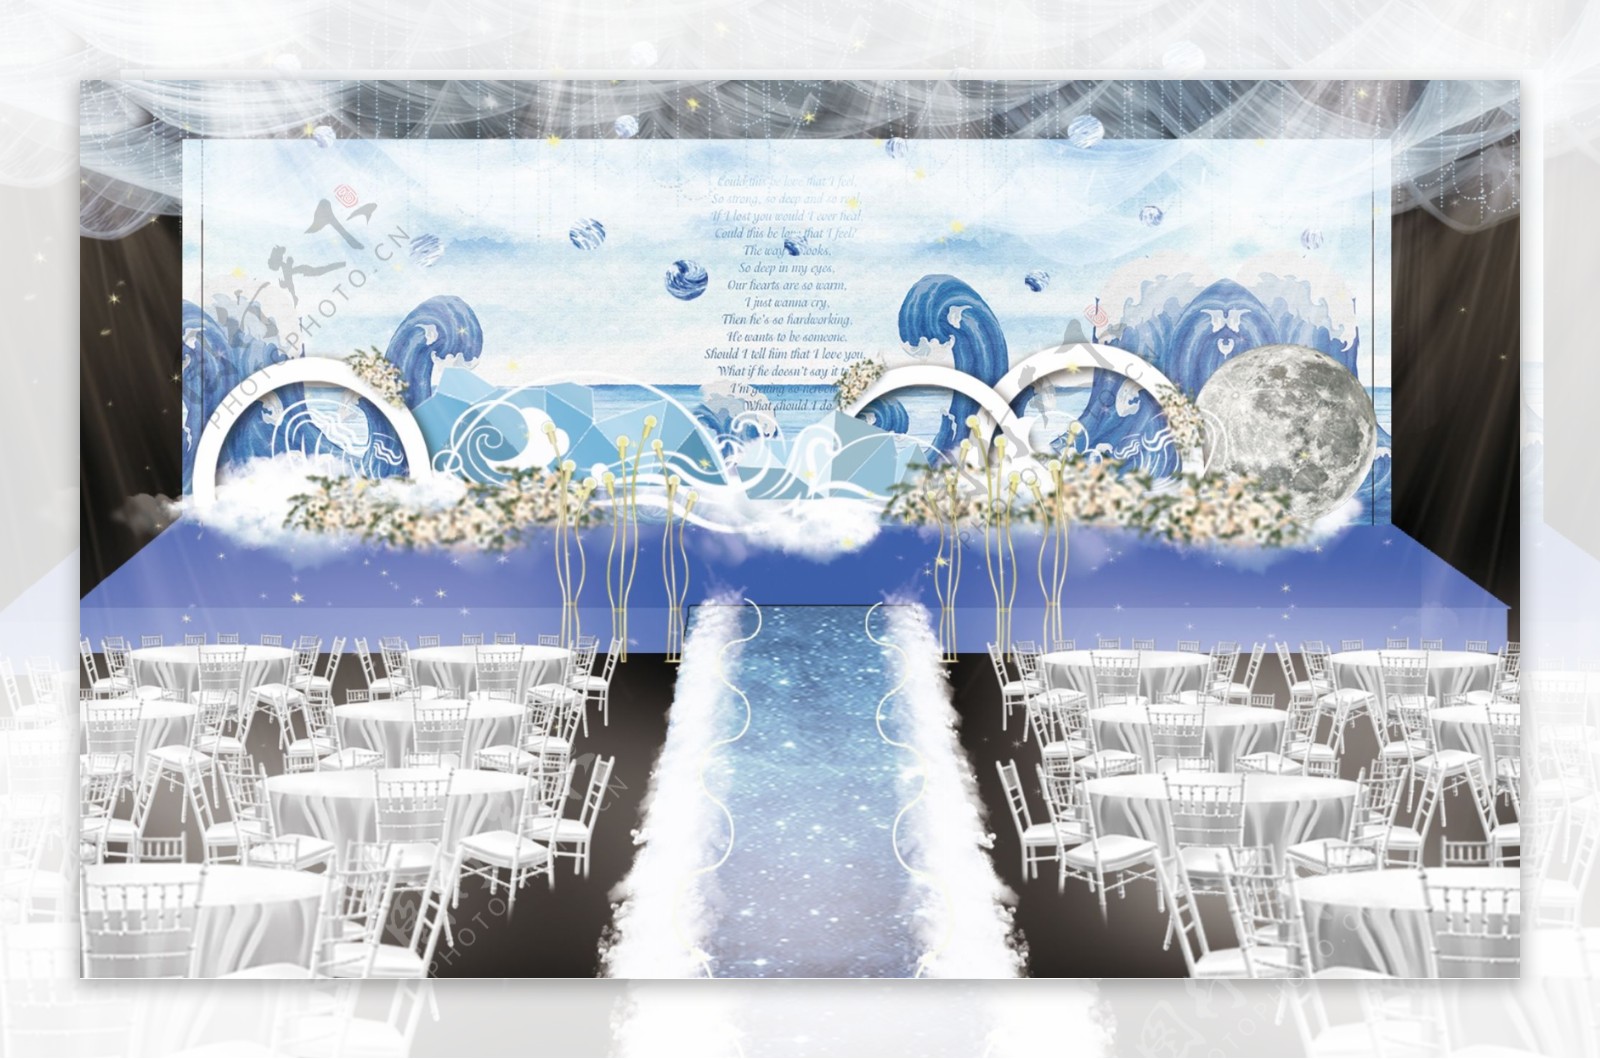 婚礼堂星空厅 - 主题婚礼 - 婚礼图片 - 婚礼风尚